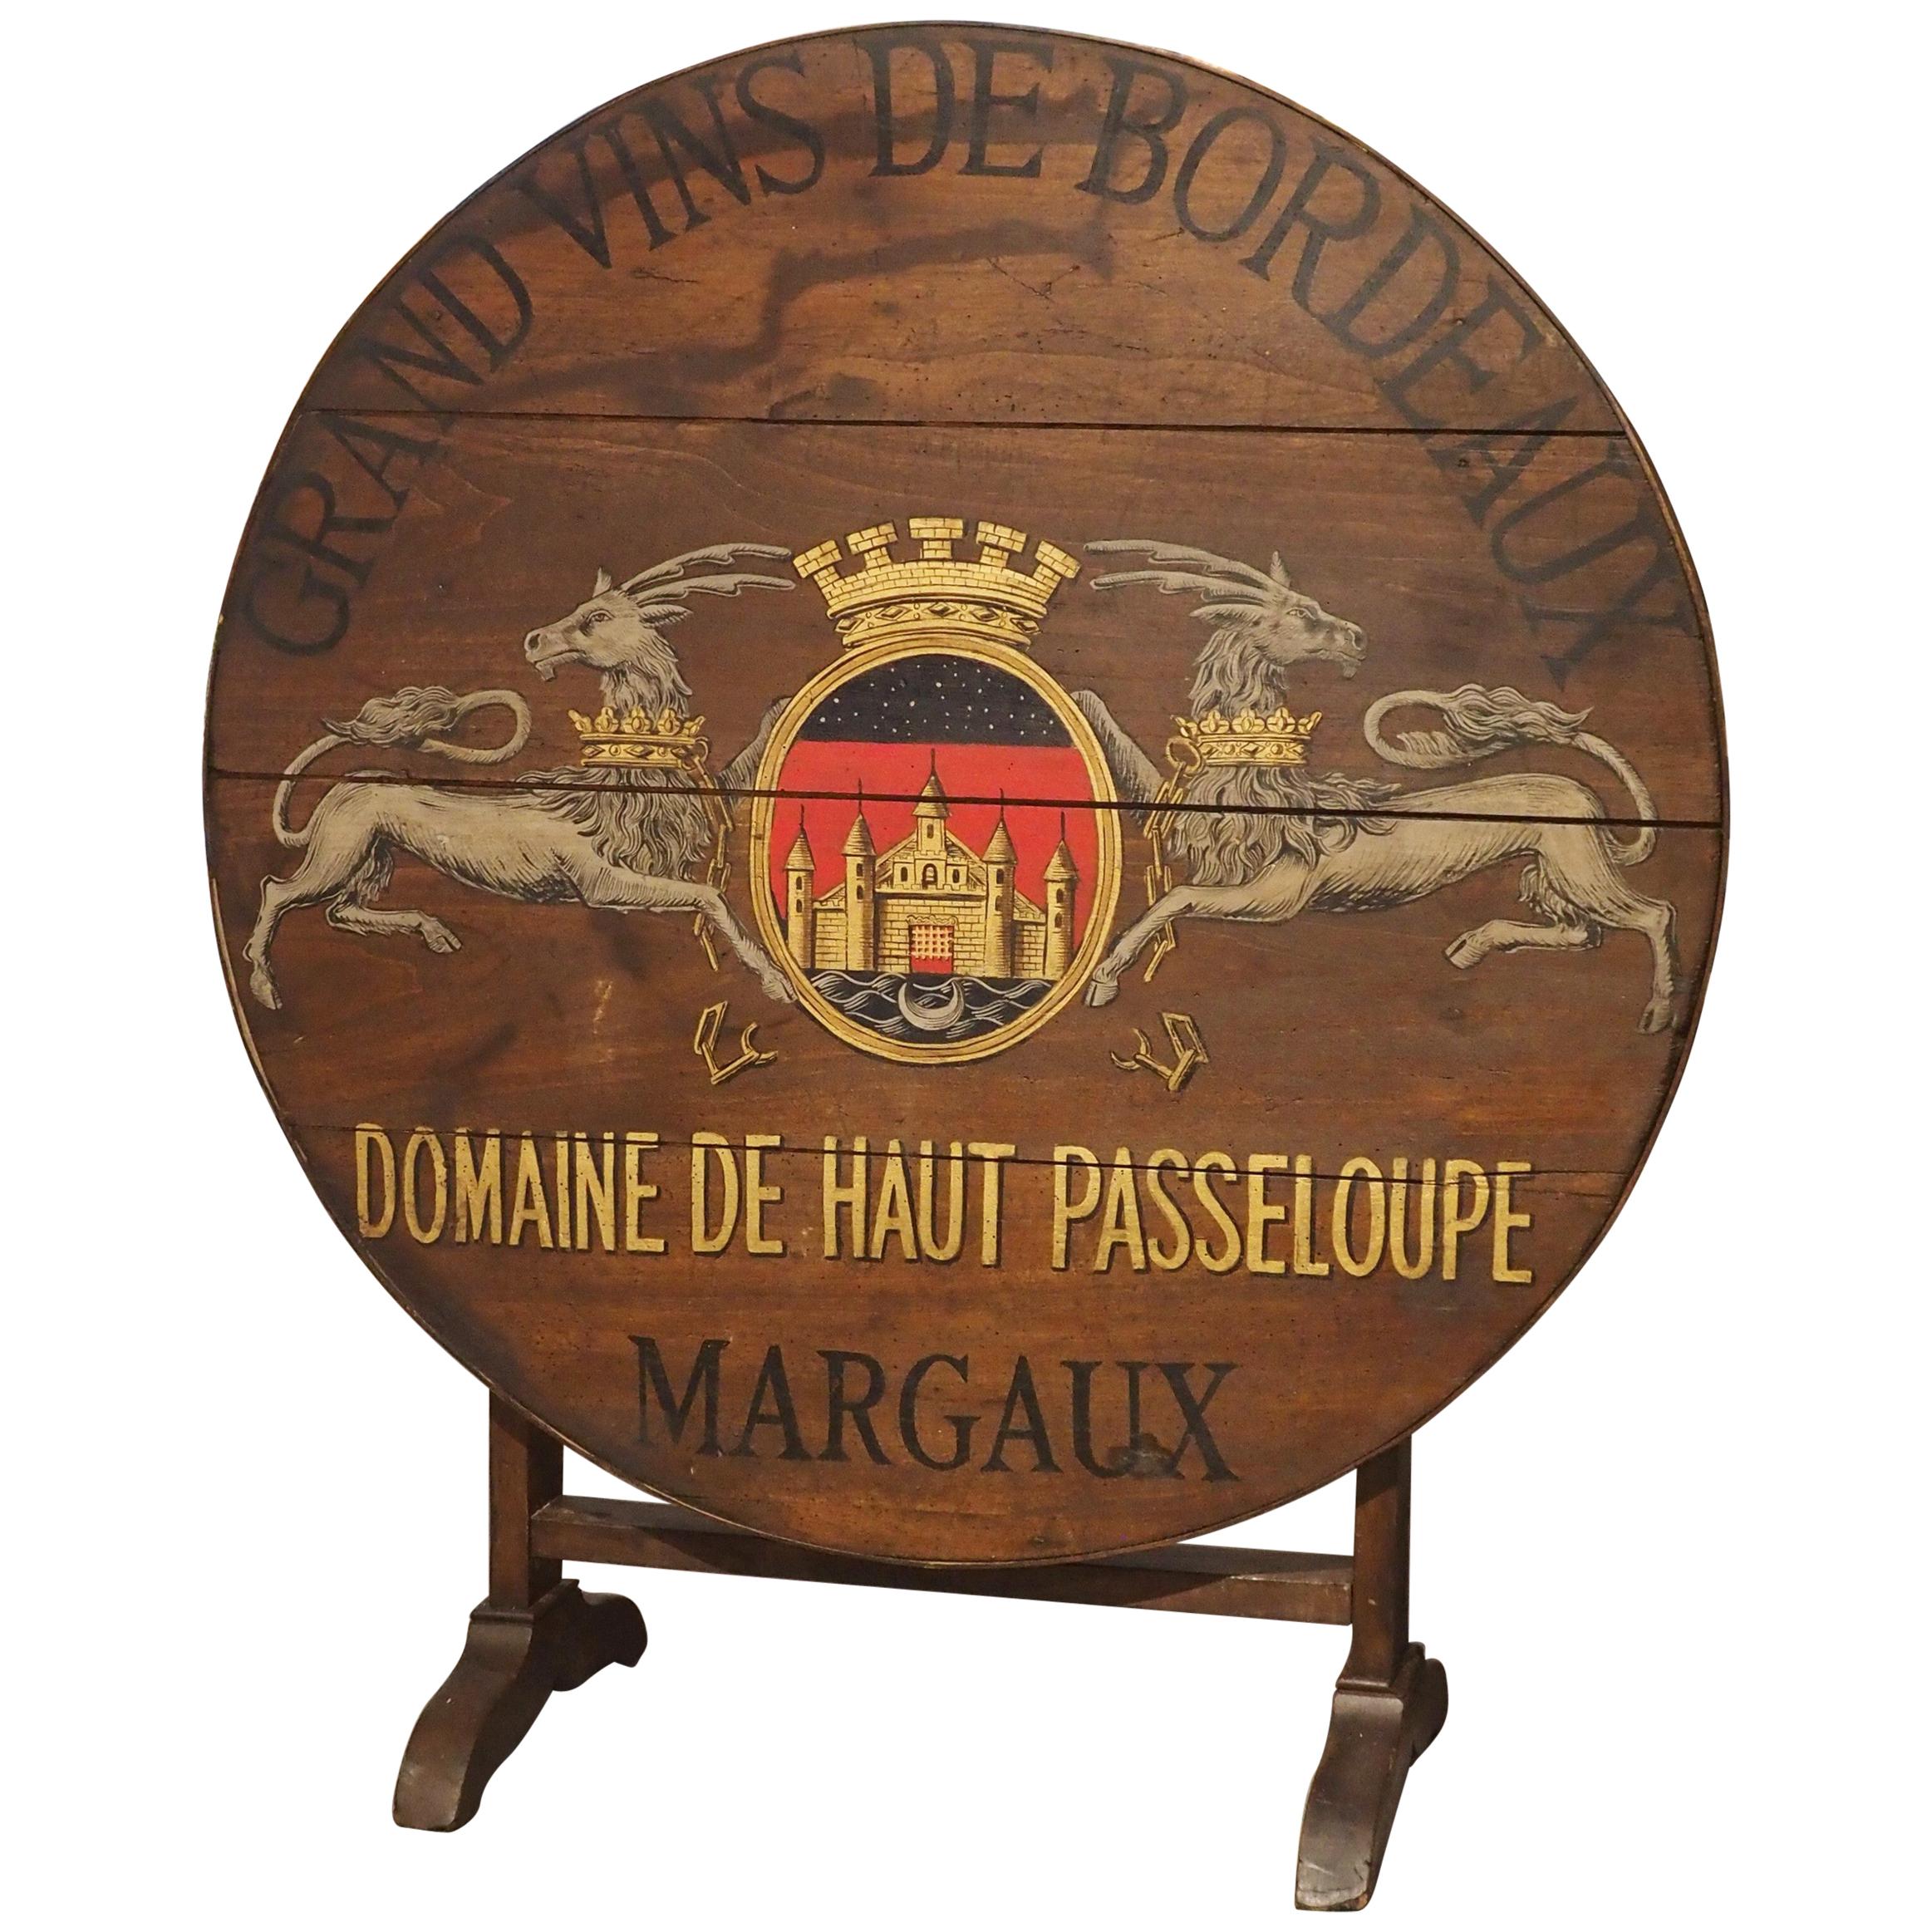 Antique Painted French Wine Tasting Table, “Grand Vins de Bordeaux”